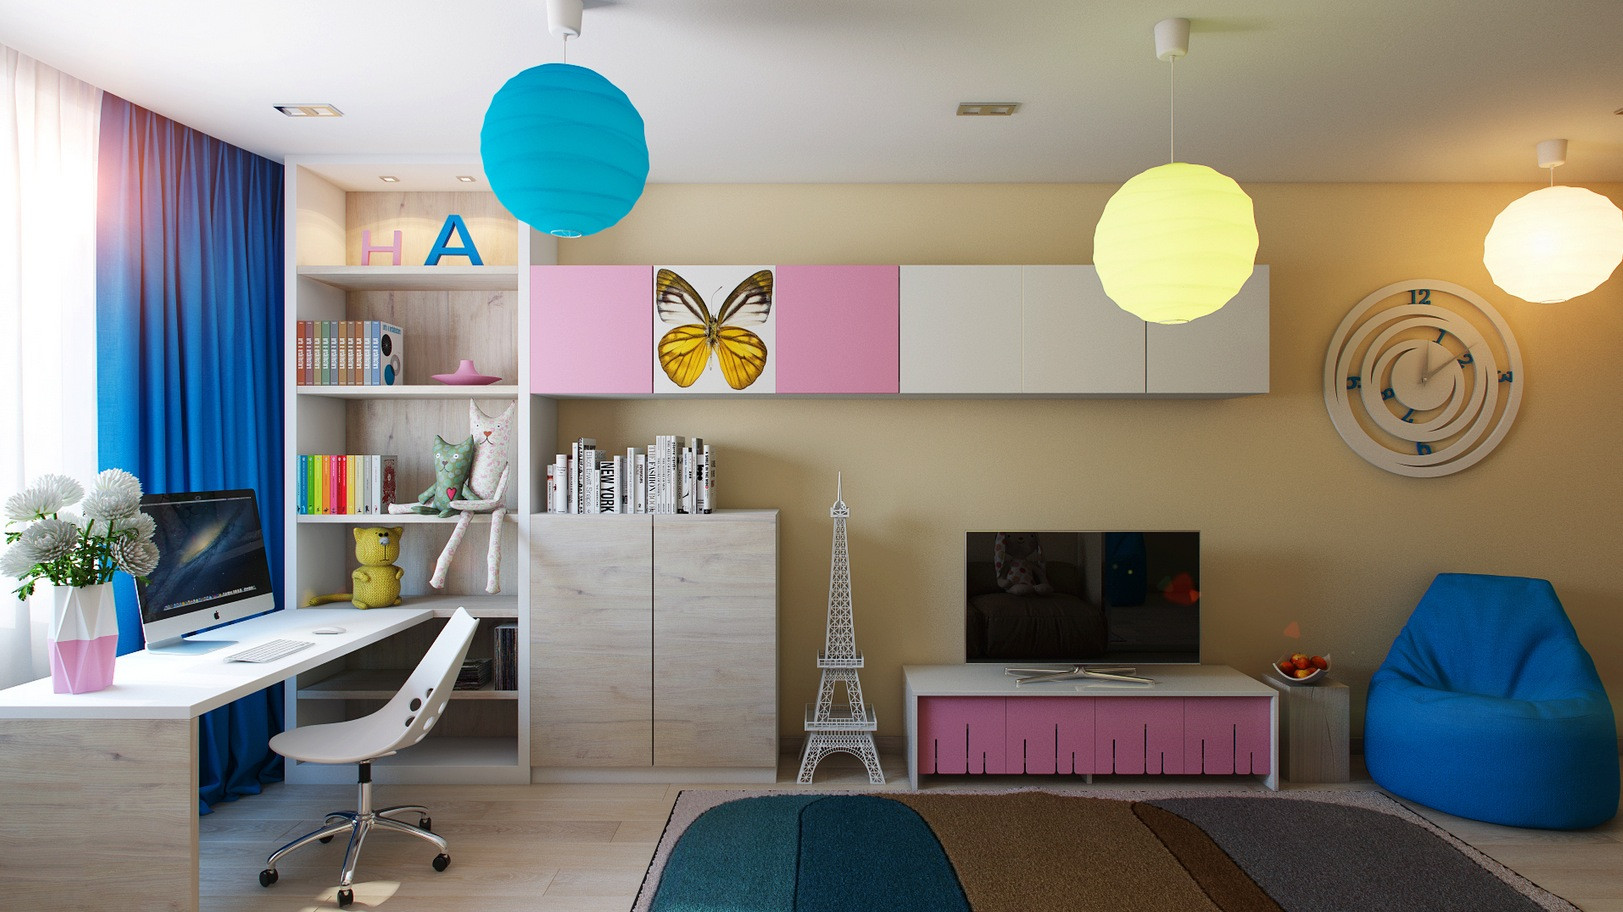 Tv For Kids Room
 Casting Color Over Kids Rooms